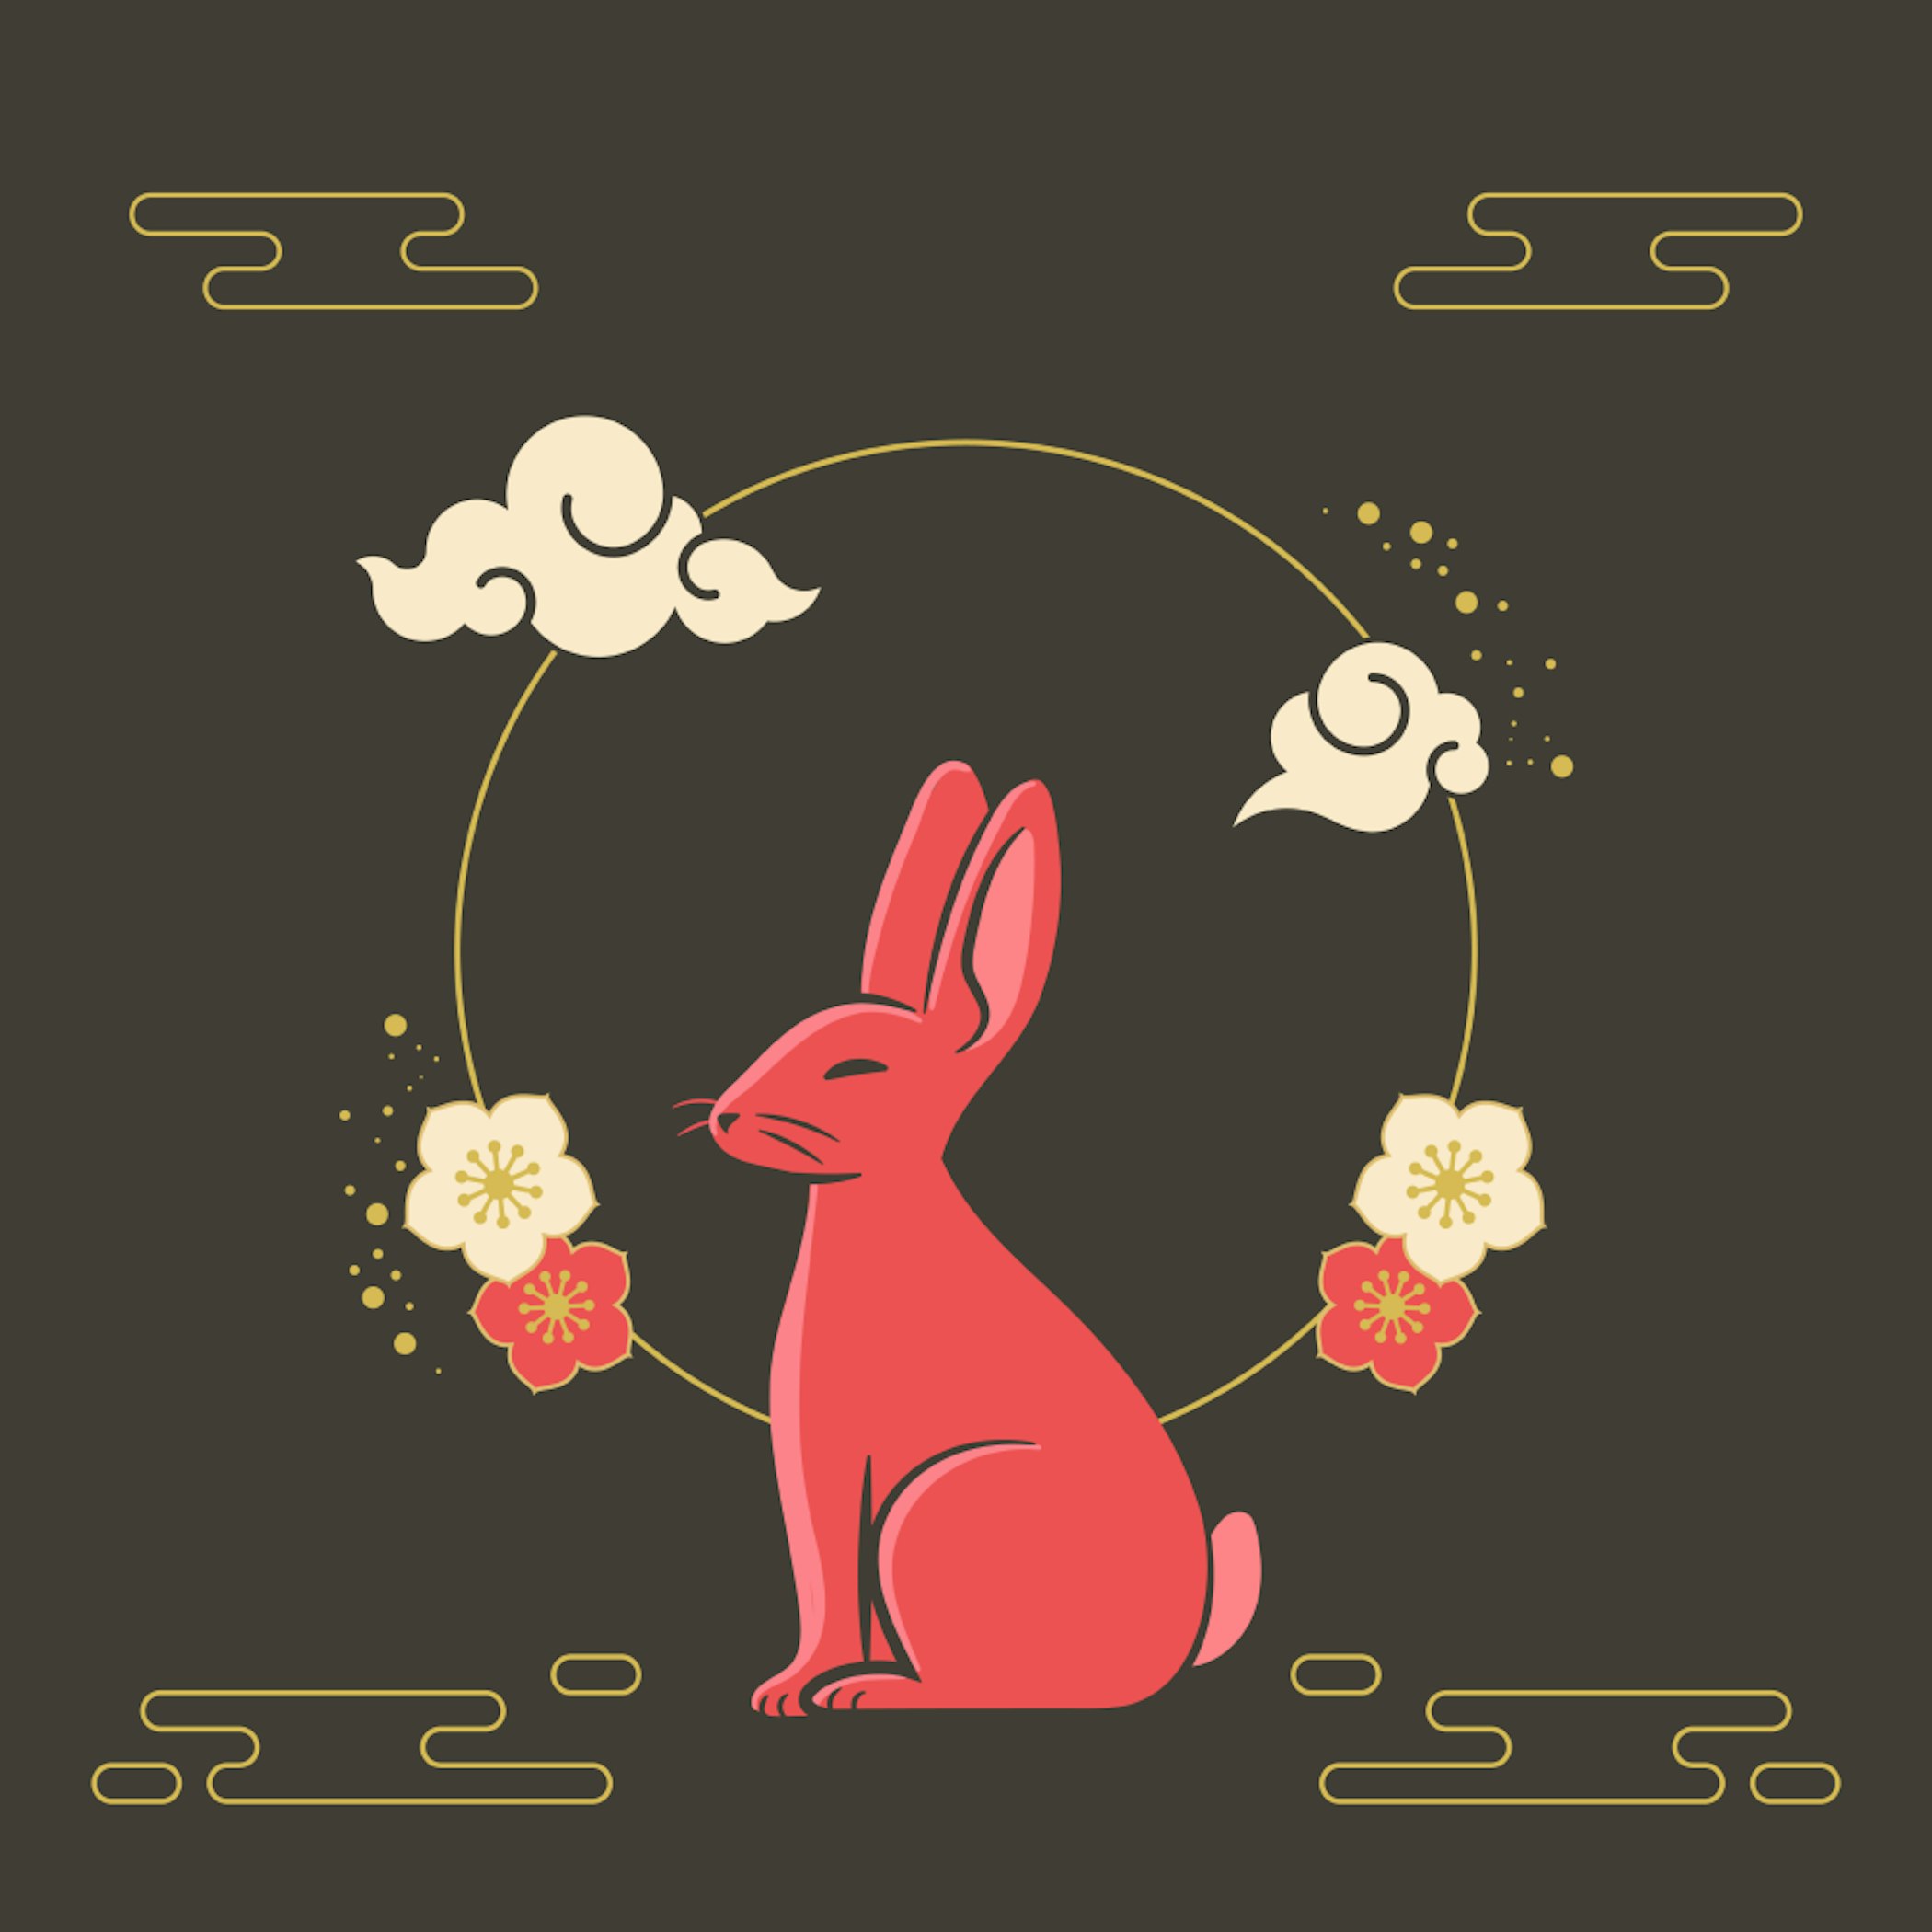 Free Art Year Rabbit Chinese Mixkit